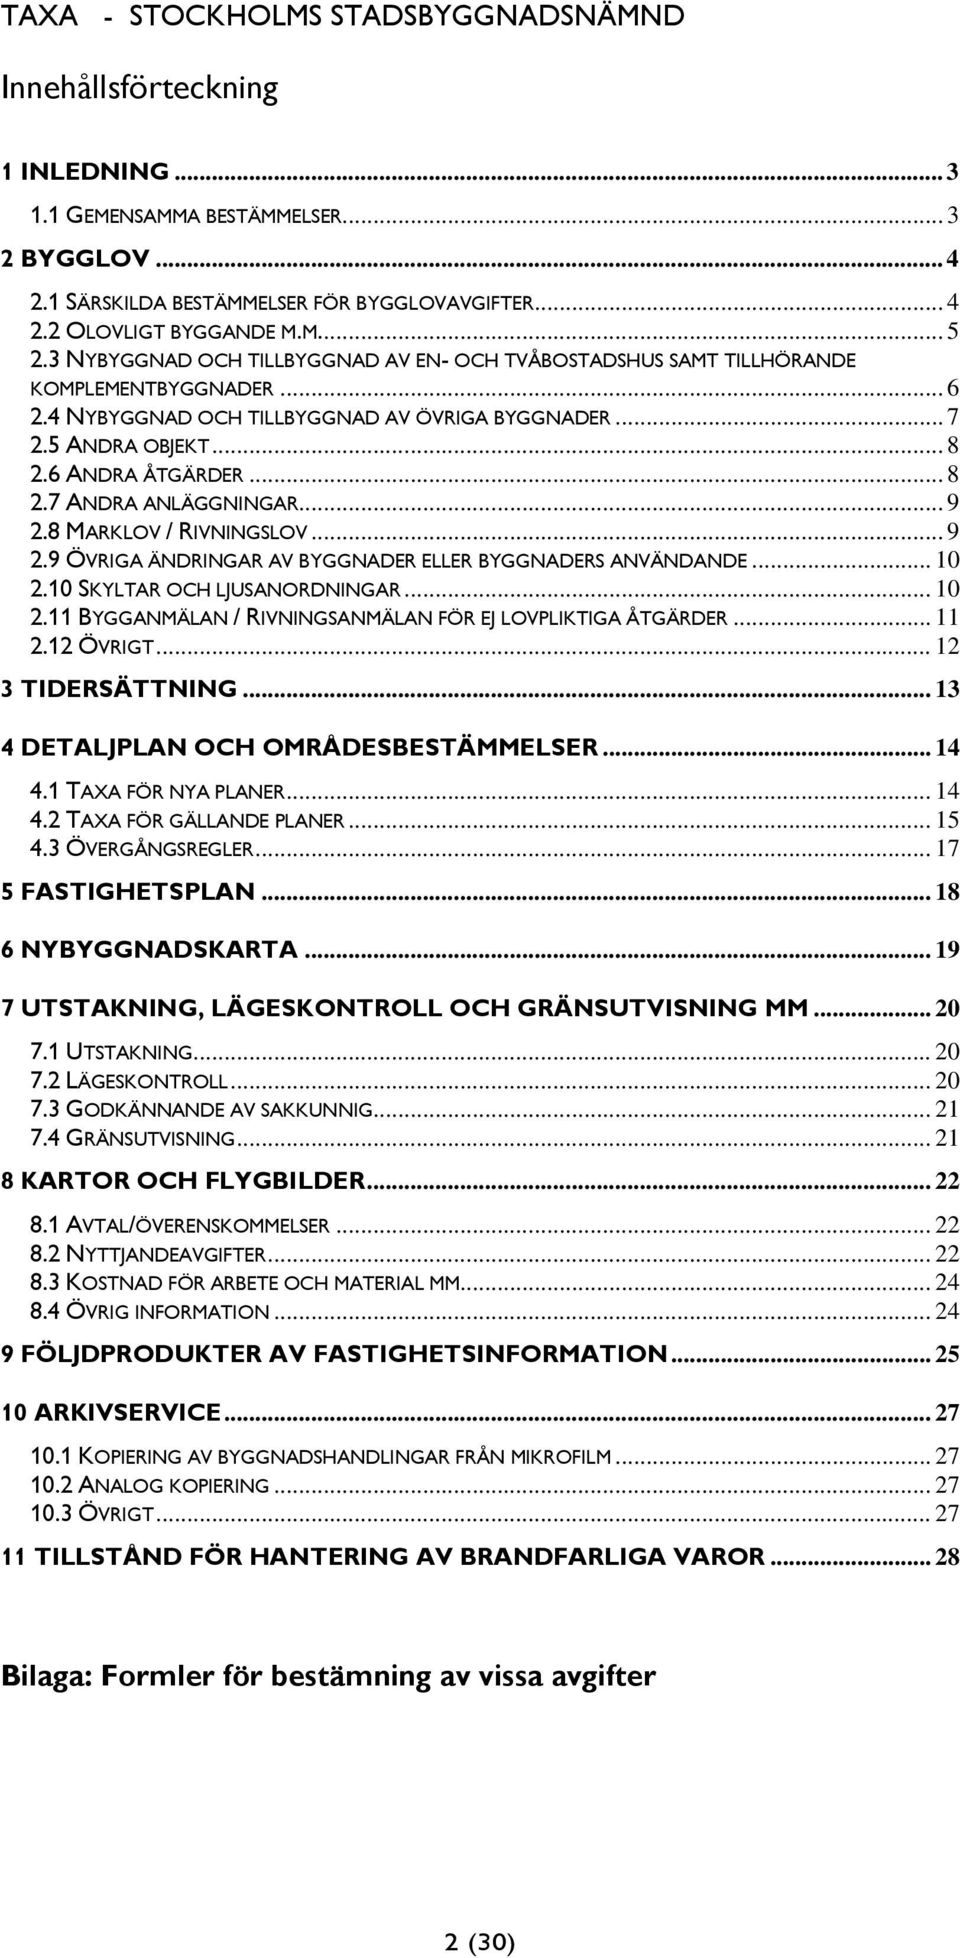 .. 9 2.8 MARKLOV / RIVNINGSLOV... 9 2.9 ÖVRIGA ÄNDRINGAR AV BYGGNADER ELLER BYGGNADERS ANVÄNDANDE... 10 2.10 SKYLTAR OCH LJUSANORDNINGAR... 10 2.11 BYGGANMÄLAN / RIVNINGSANMÄLAN FÖR EJ LOVPLIKTIGA ÅTGÄRDER.